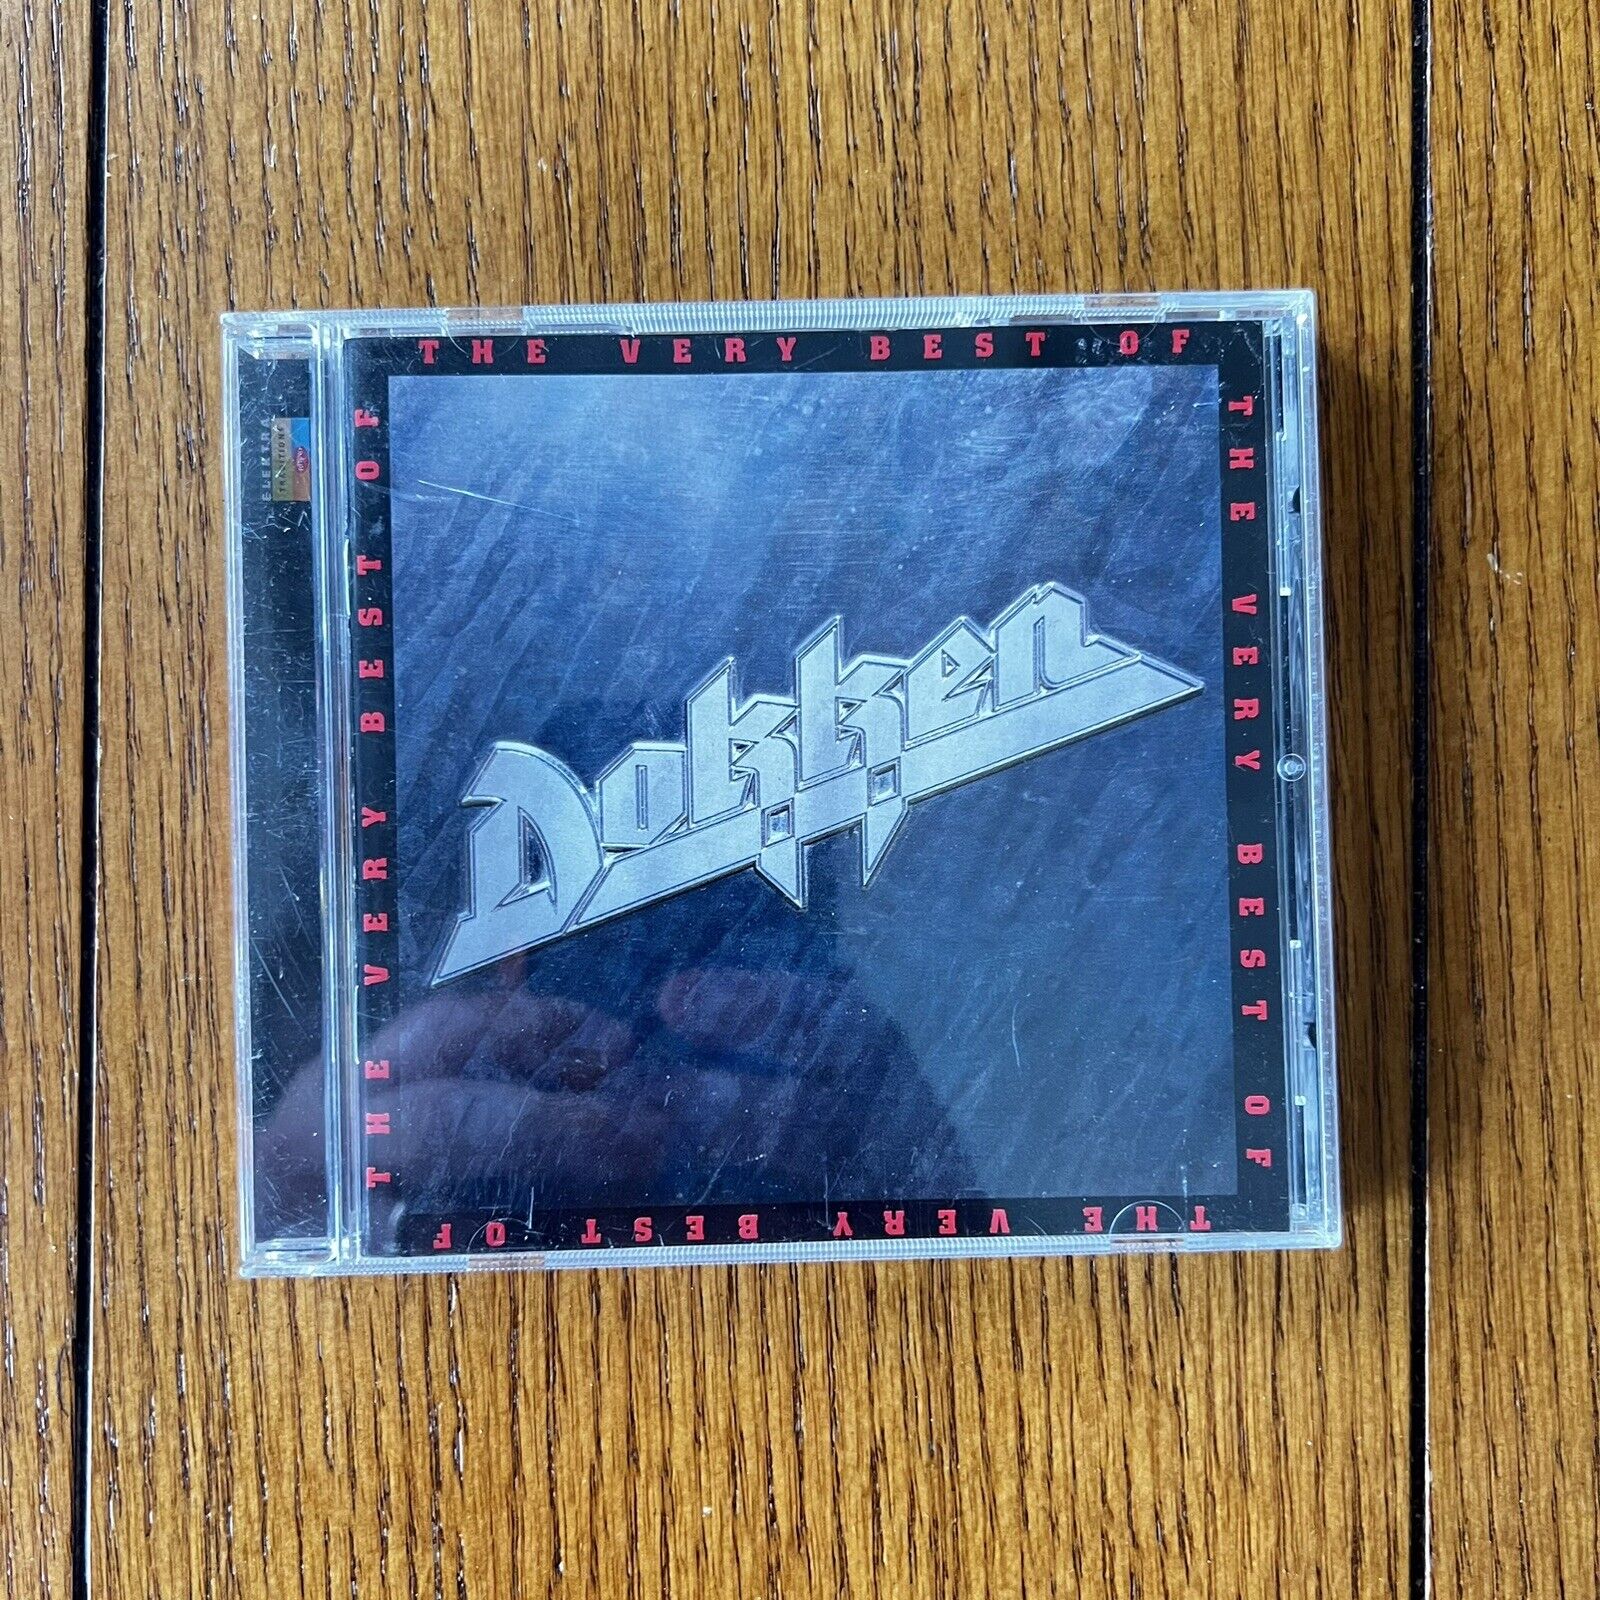 Dokken - The Very Best Of CD